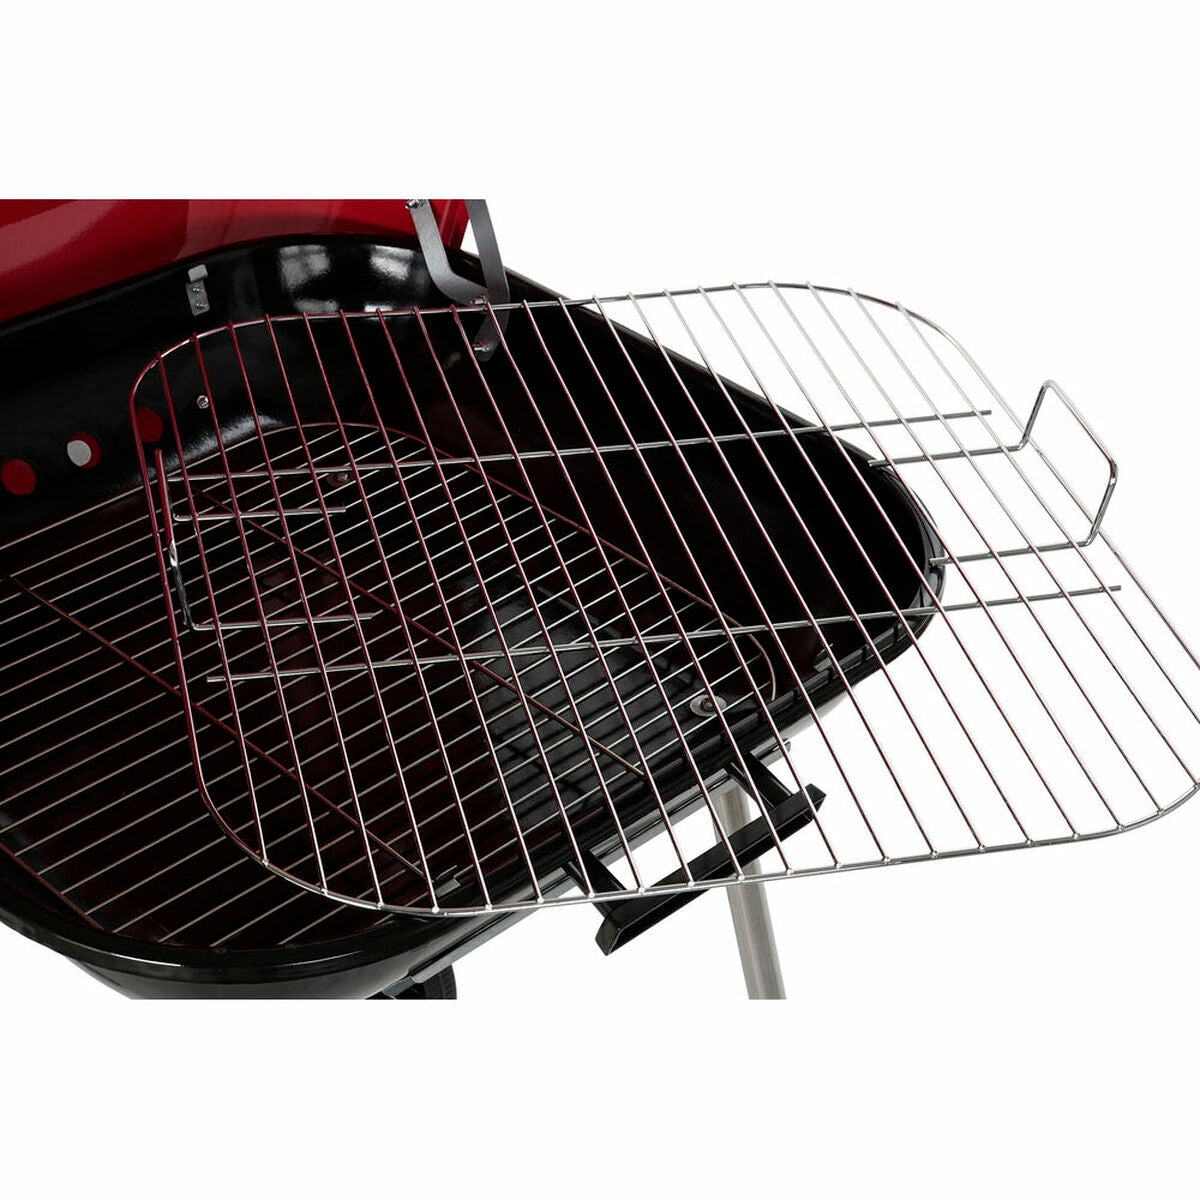 Barbecue a Carbone con Coperchio e Ruote DKD Home Decor Rosso Nero Metallo Acciaio 30 x 40 cm 60 x 57 x 80 cm (60 x 57 x 80 cm)